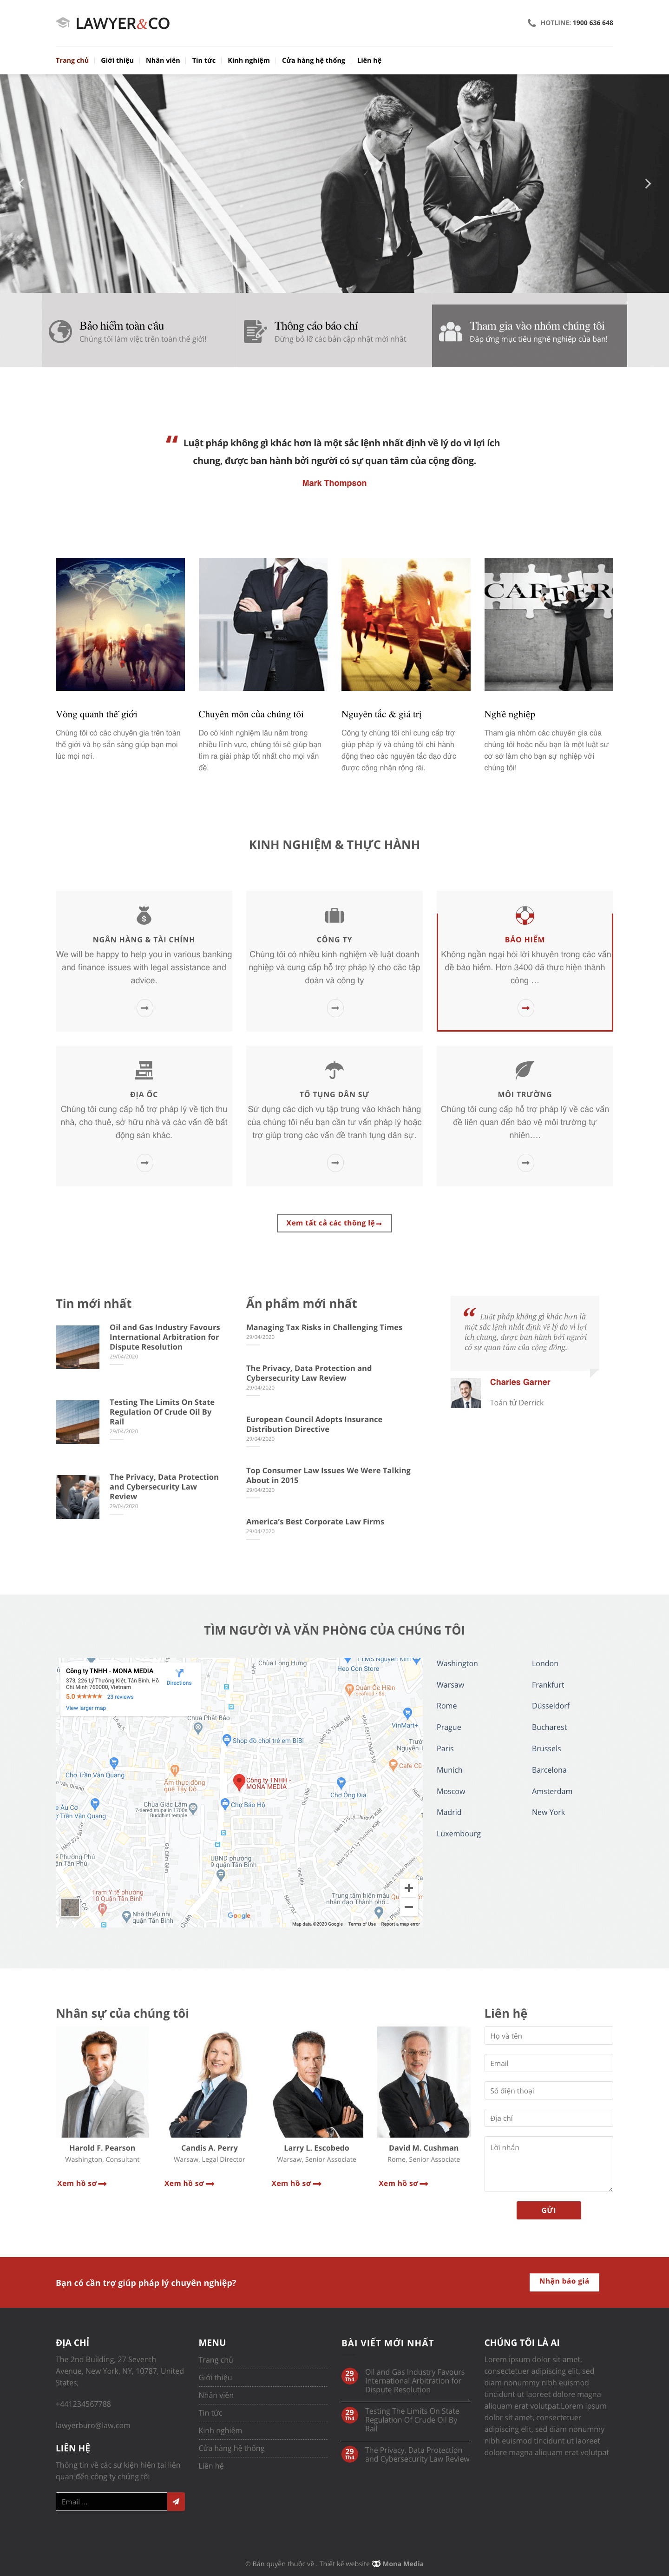 Mẫu website dịch vụ luật sư chuyên nghiệp